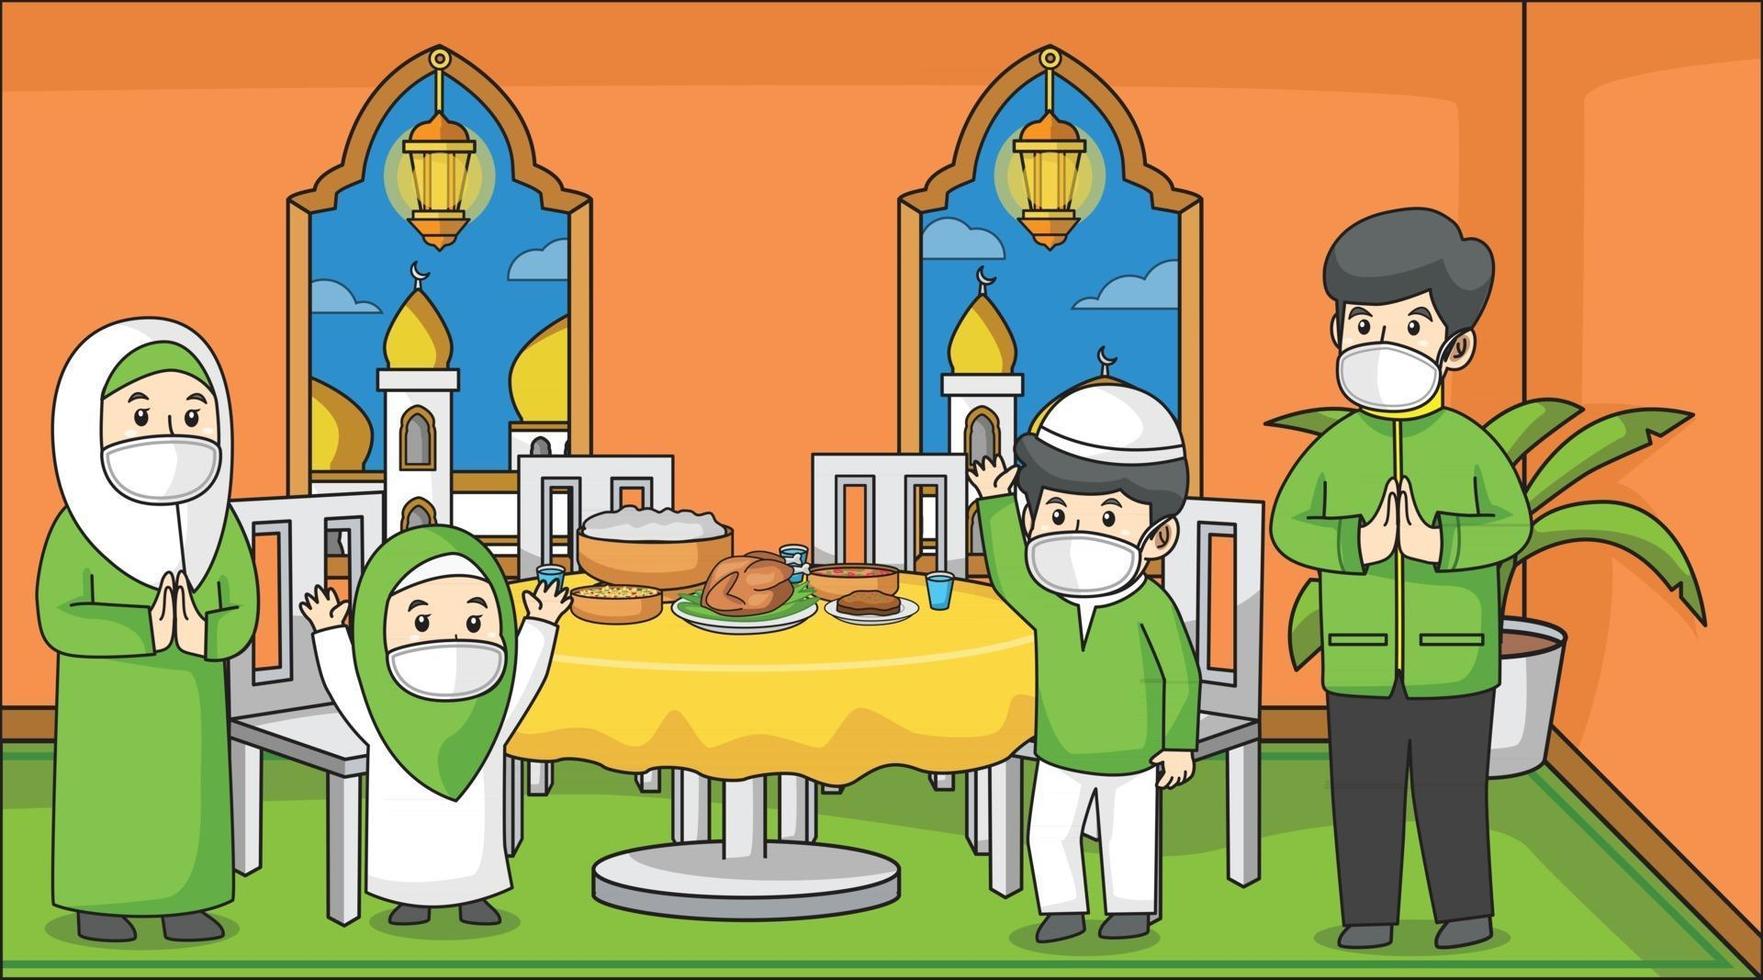 durante la pandemia del virus corona, la famiglia musulmana resta a casa e fa festa all'iftar maghrib, nel mese del ramadan. usando maschere e protocolli sanitari. illustrazione del libro per bambini. vettore